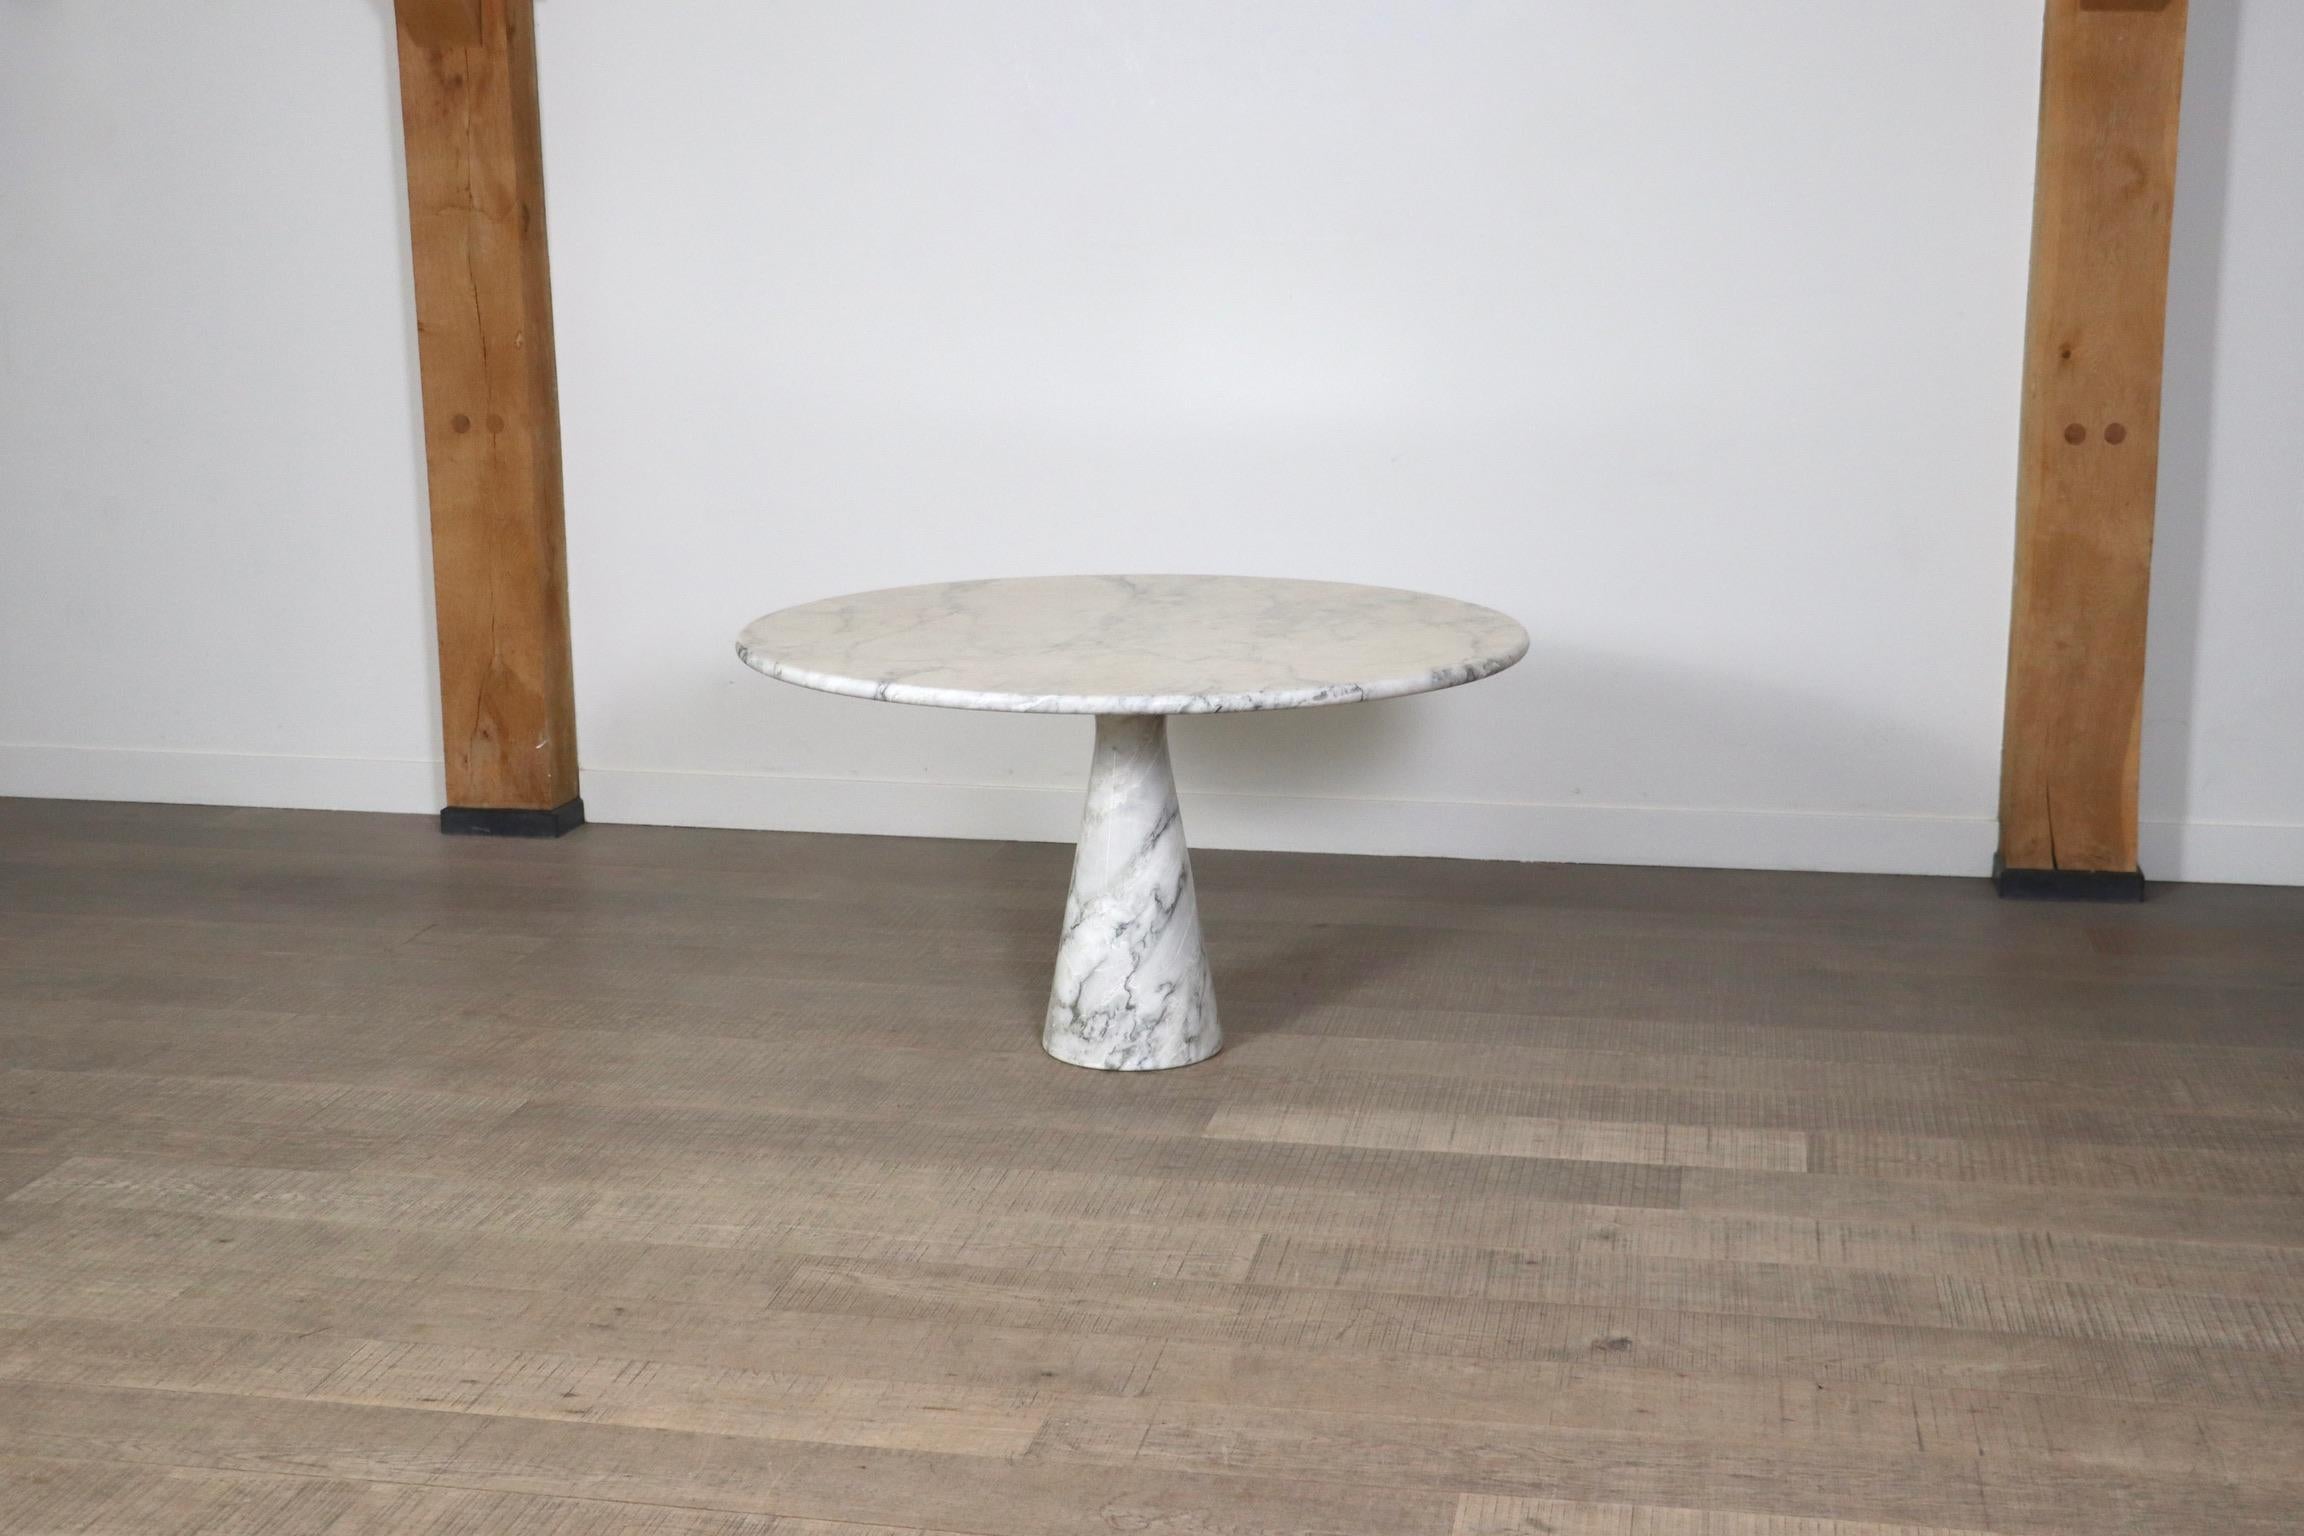 Fantastischer Esstisch M1 T70 aus Marmor, entworfen von Angelo Mangiarotti und hergestellt von Skipper, Italien 1970er Jahre. Dieser Tisch ist aus massivem Carrara-Marmor gefertigt, der eine schöne Maserung aufweist. Das einseitig gelagerte Bein